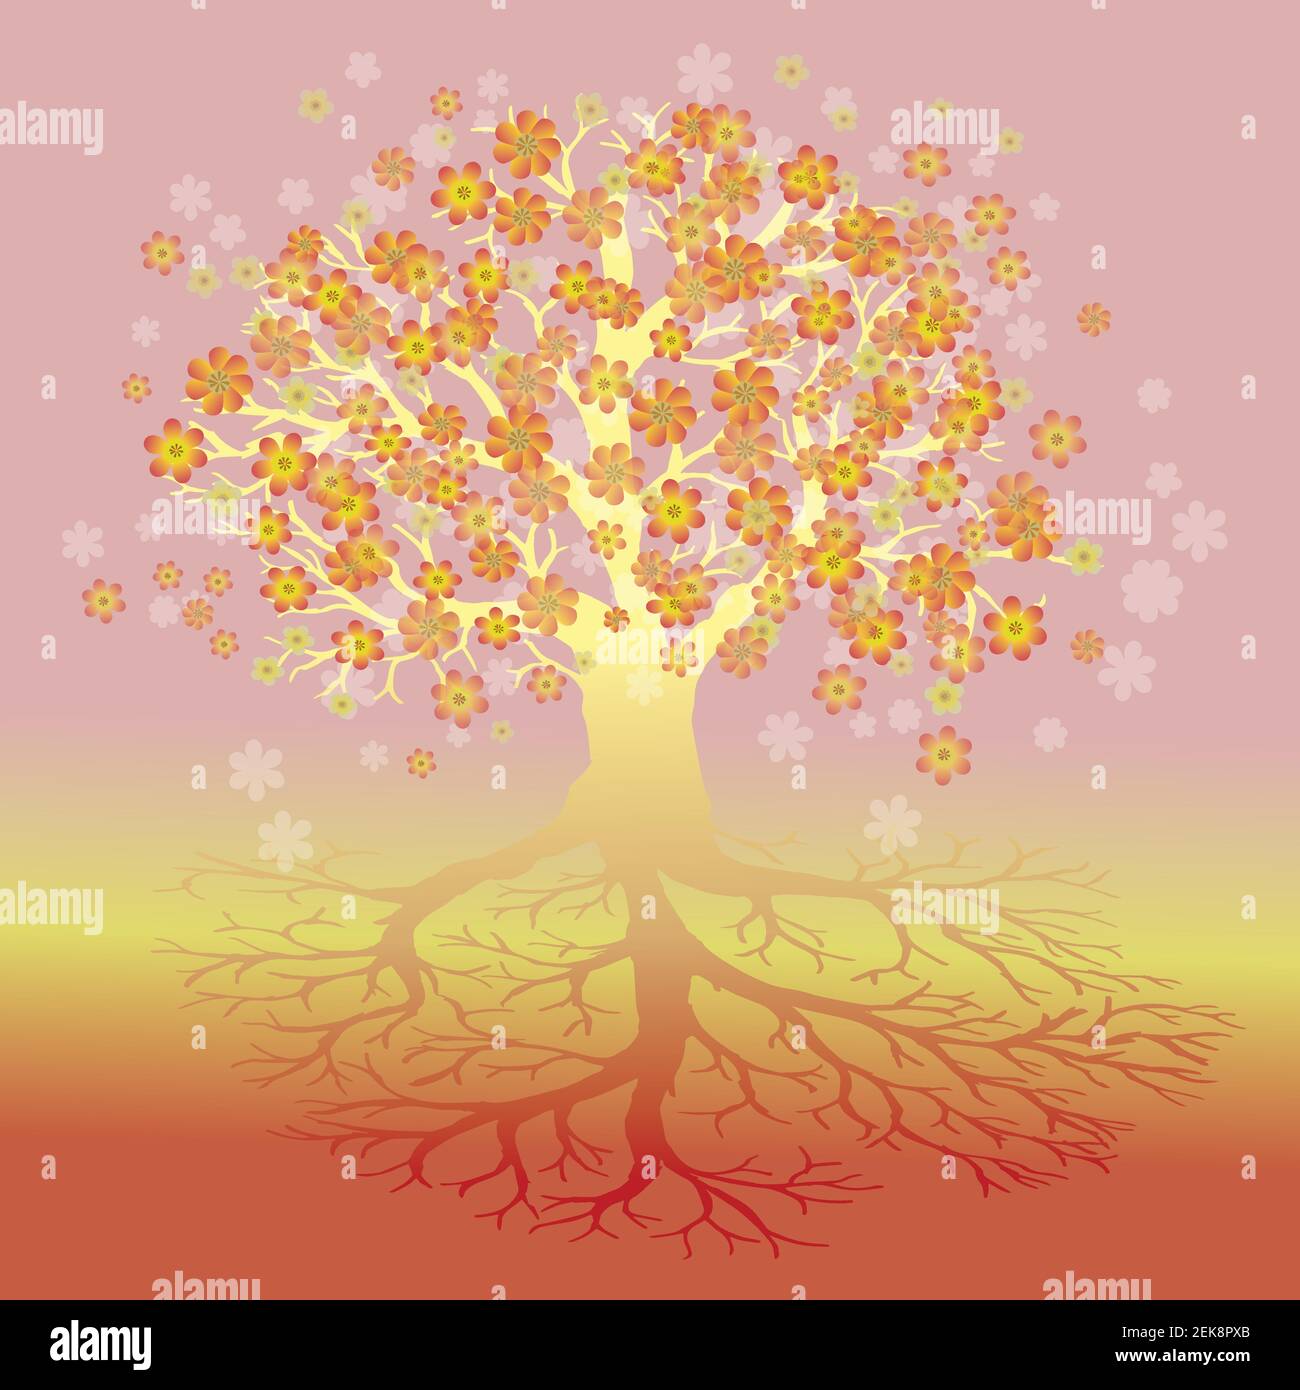 Lebensbaum mit gelben, orangen und roten Blüten. Die Zweige der Krone sind gelb. Stock Vektor